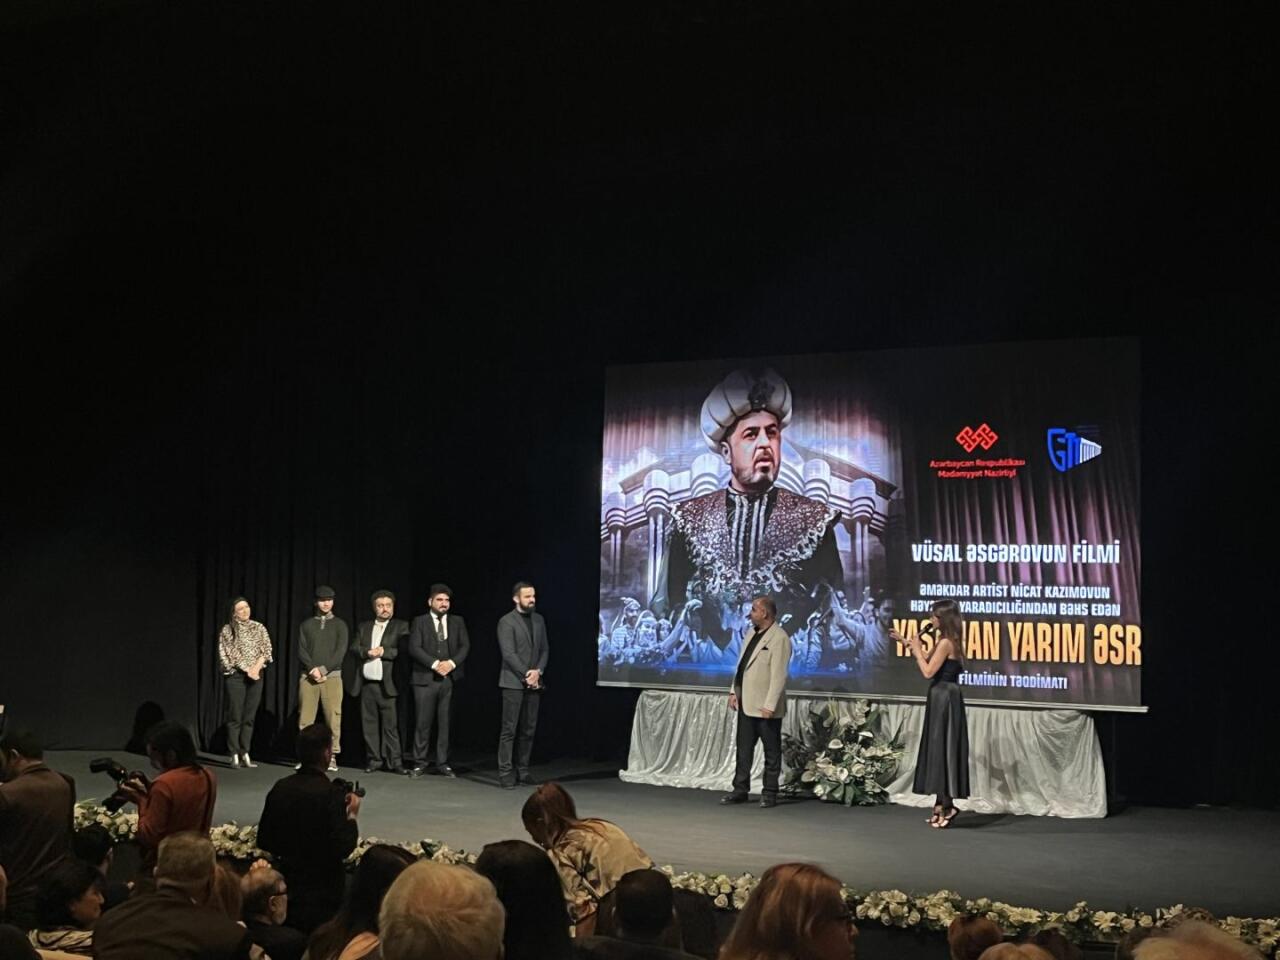 В Баку показали фильм, посвященный Ниджату Кязымову